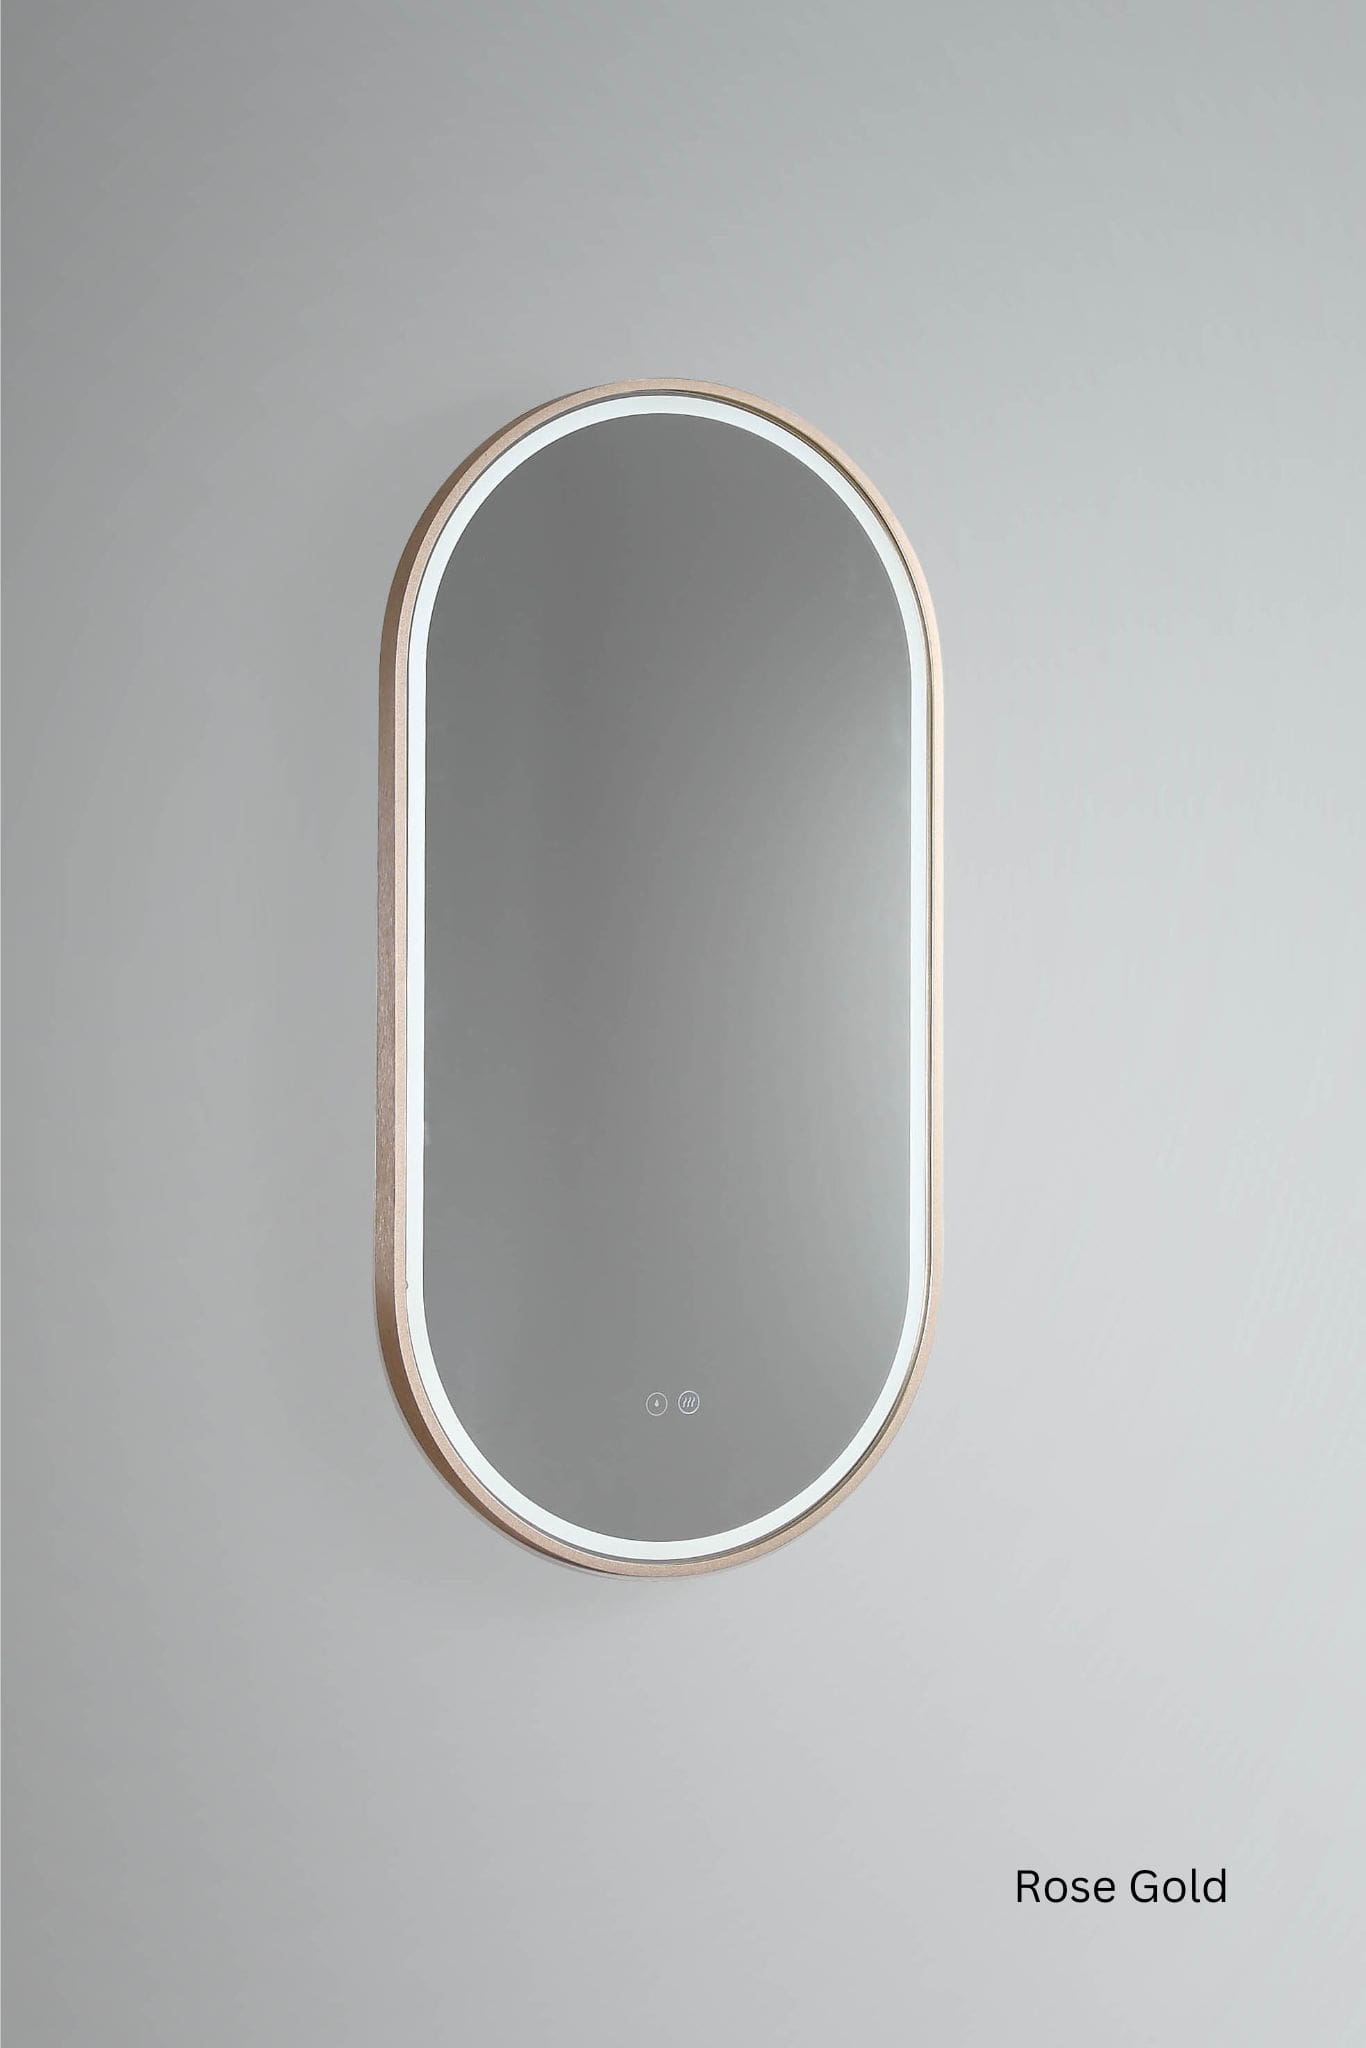 Remer Gatsby Backlit Bathroom Mirror